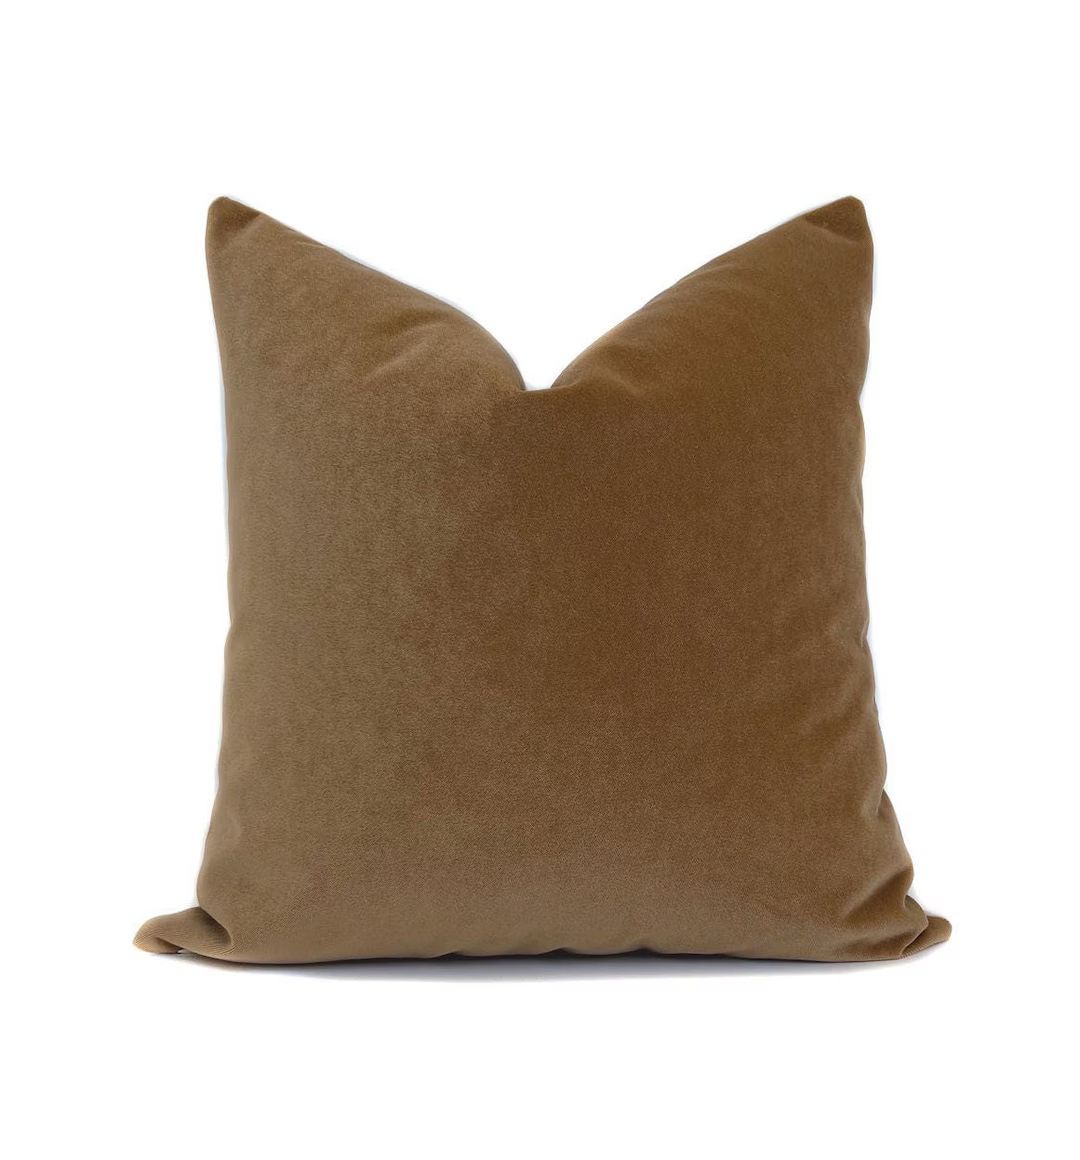 Carmel Velvet Pillow Cover Brown Throw Pillow Velvet Pillow Hollywood Regency Pillow Accent Pillo... | Etsy (US)